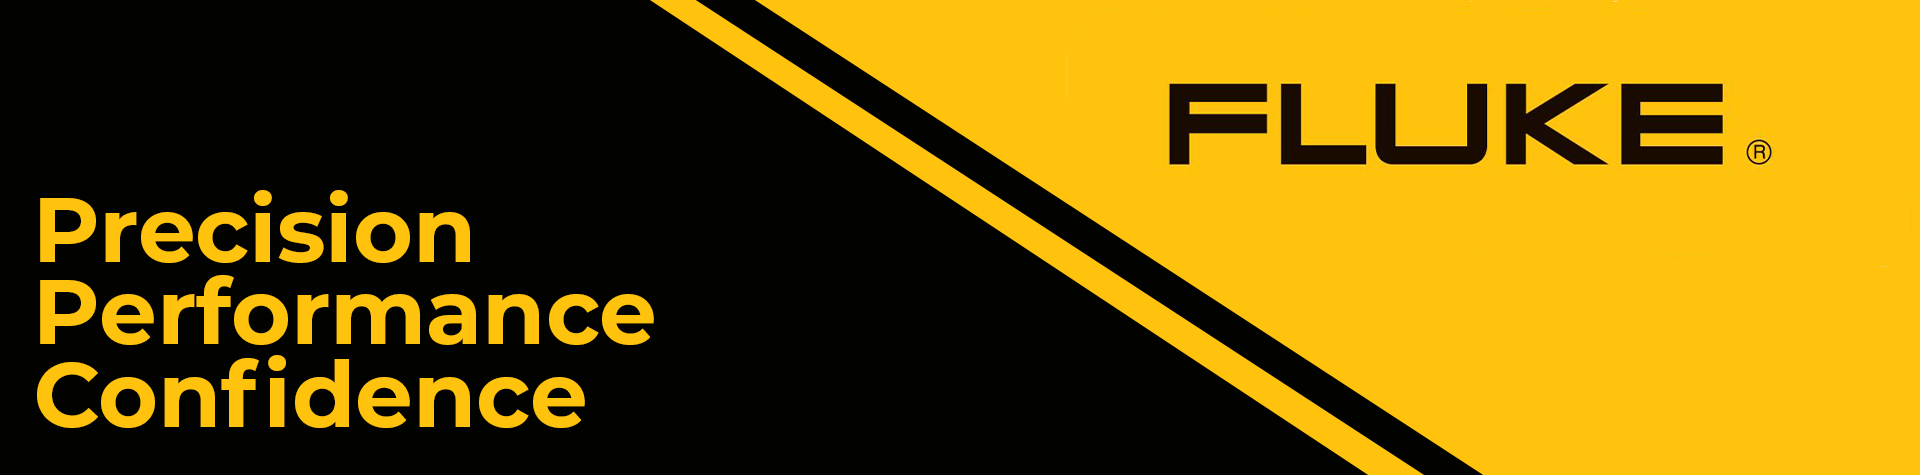 FLUKE banner